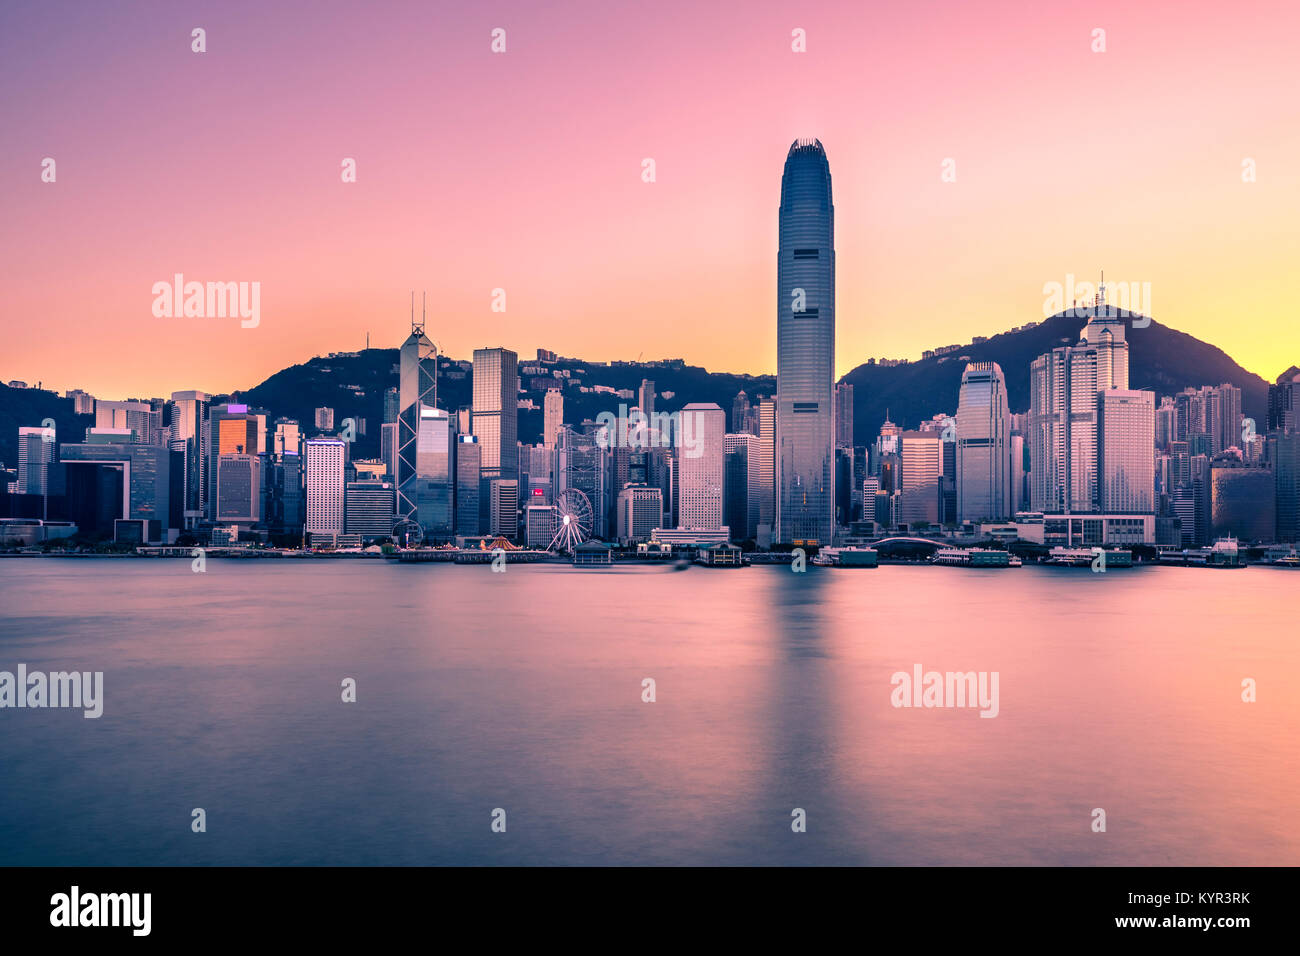 Victoria Harbor of Hong Kong at twilight Stock Photo